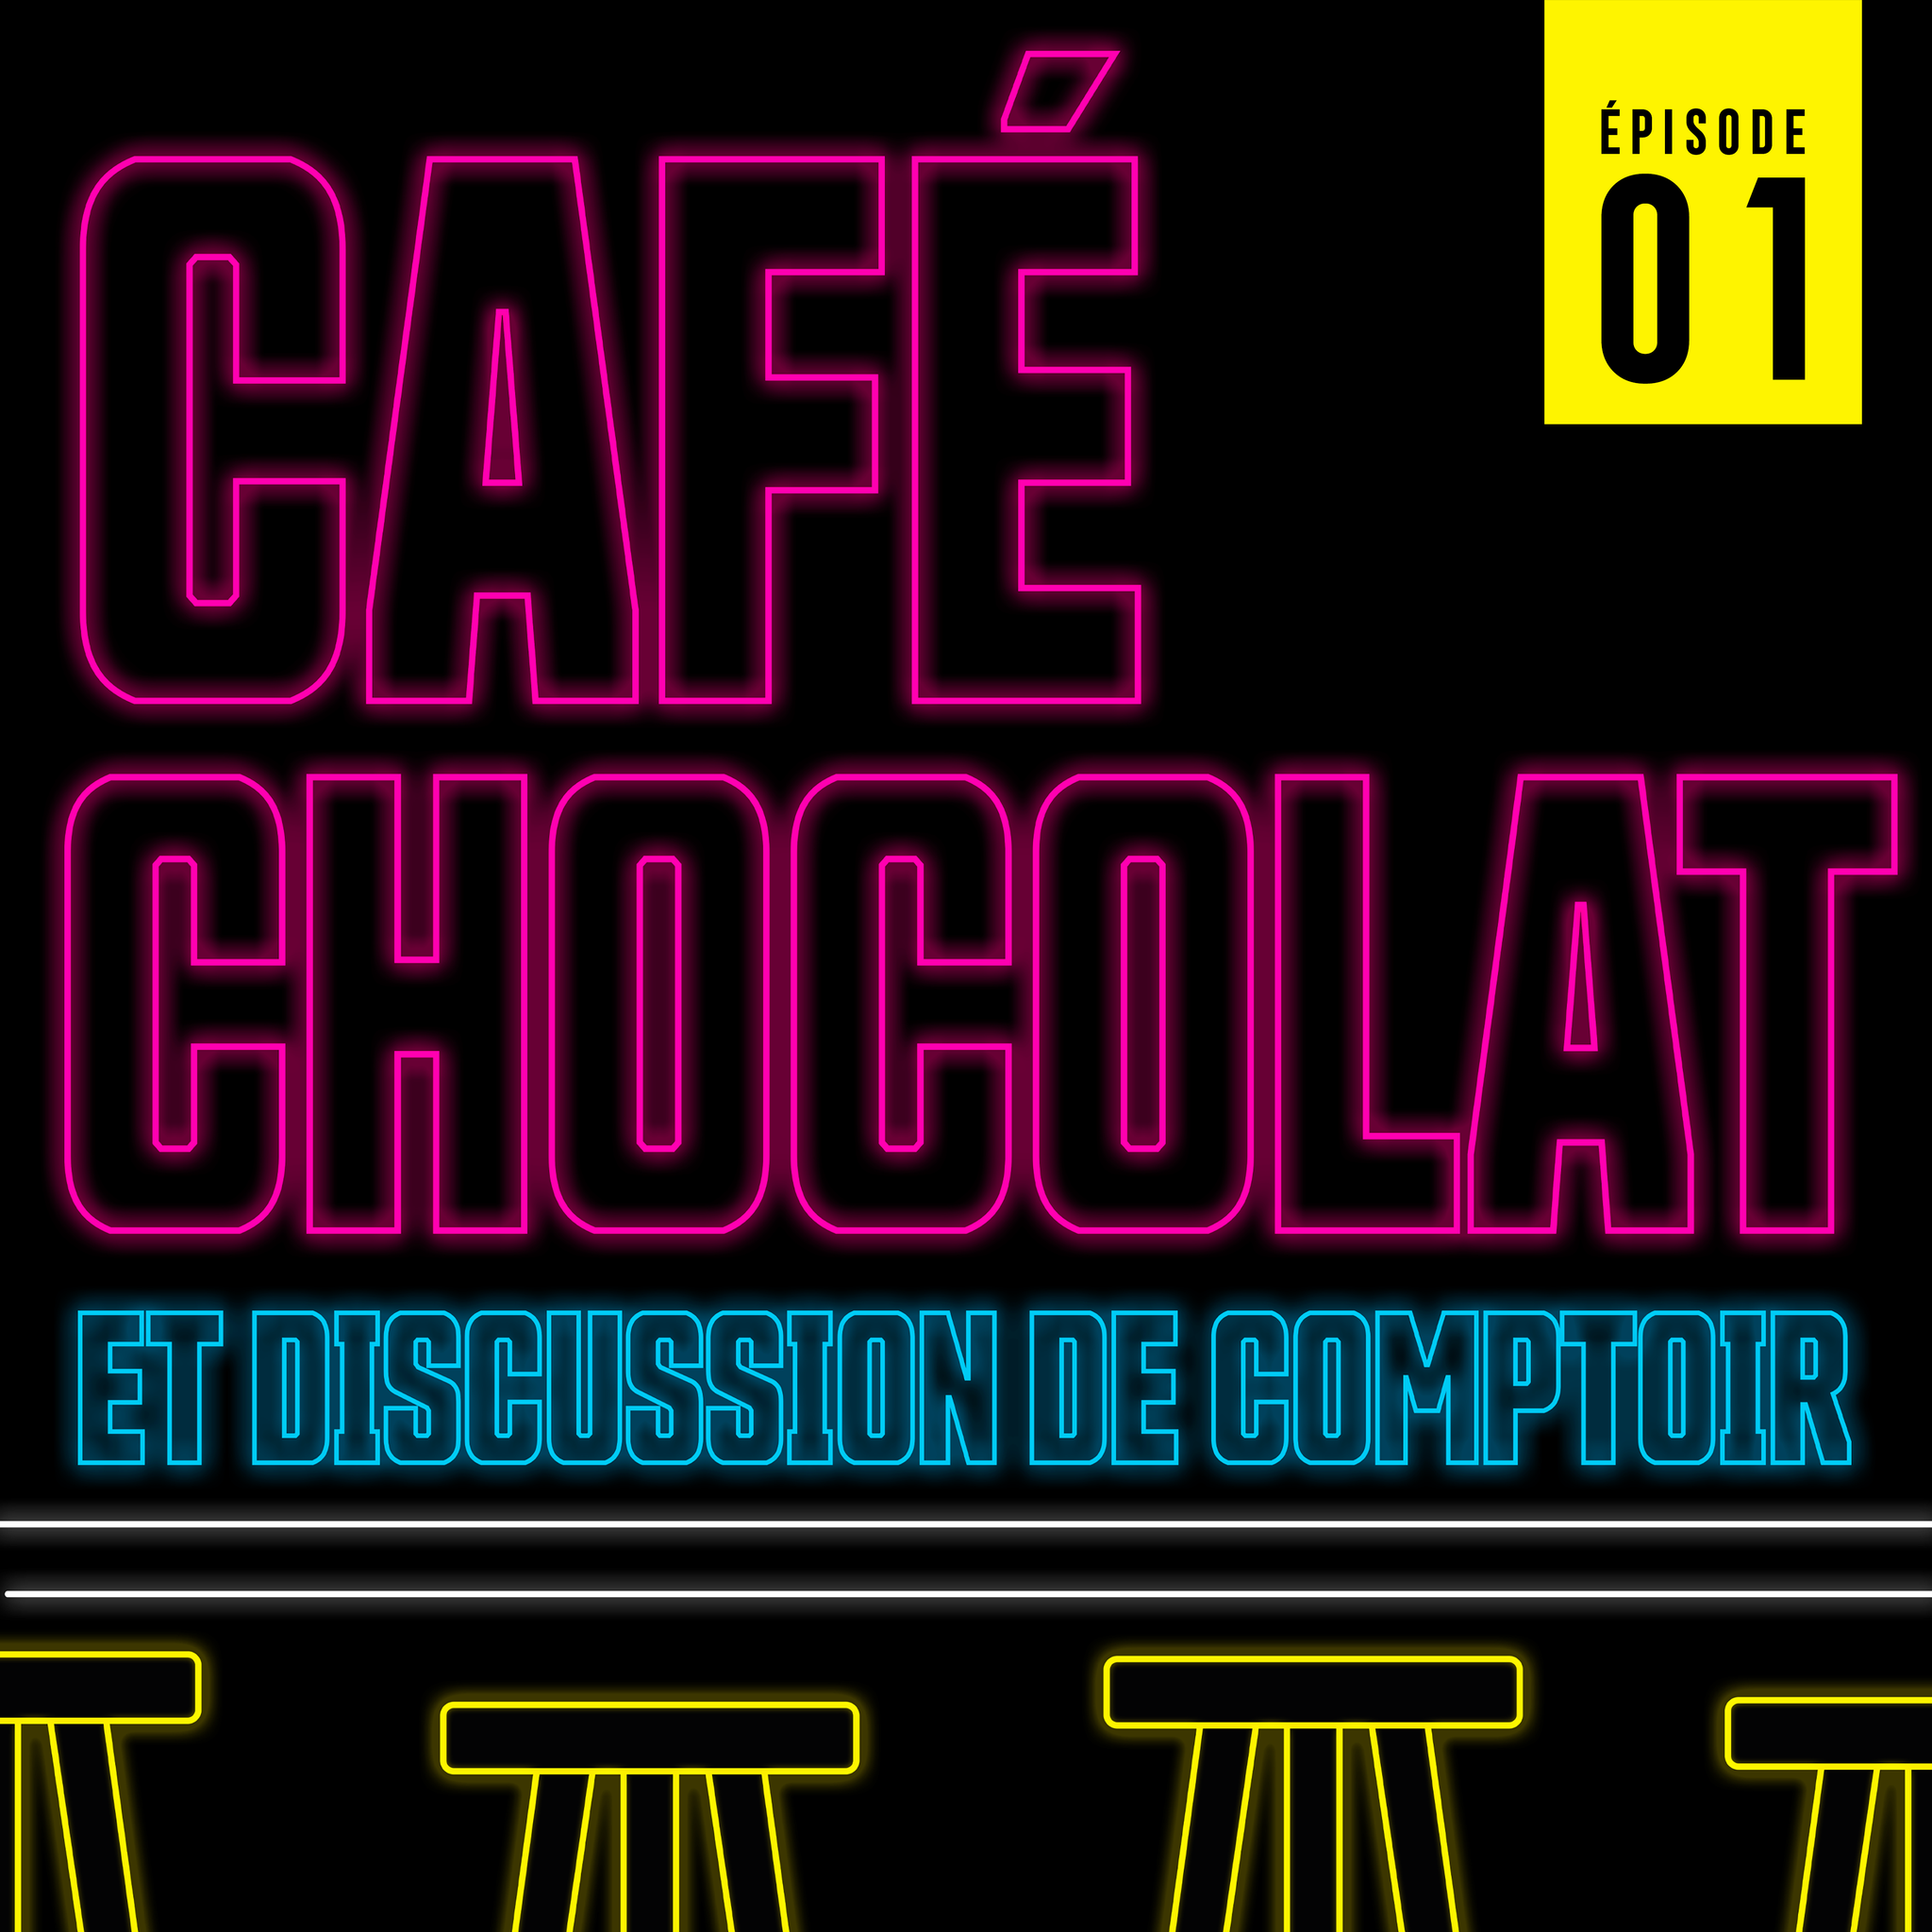 Café, Chocolat et discussion de comptoir - Épisode 01